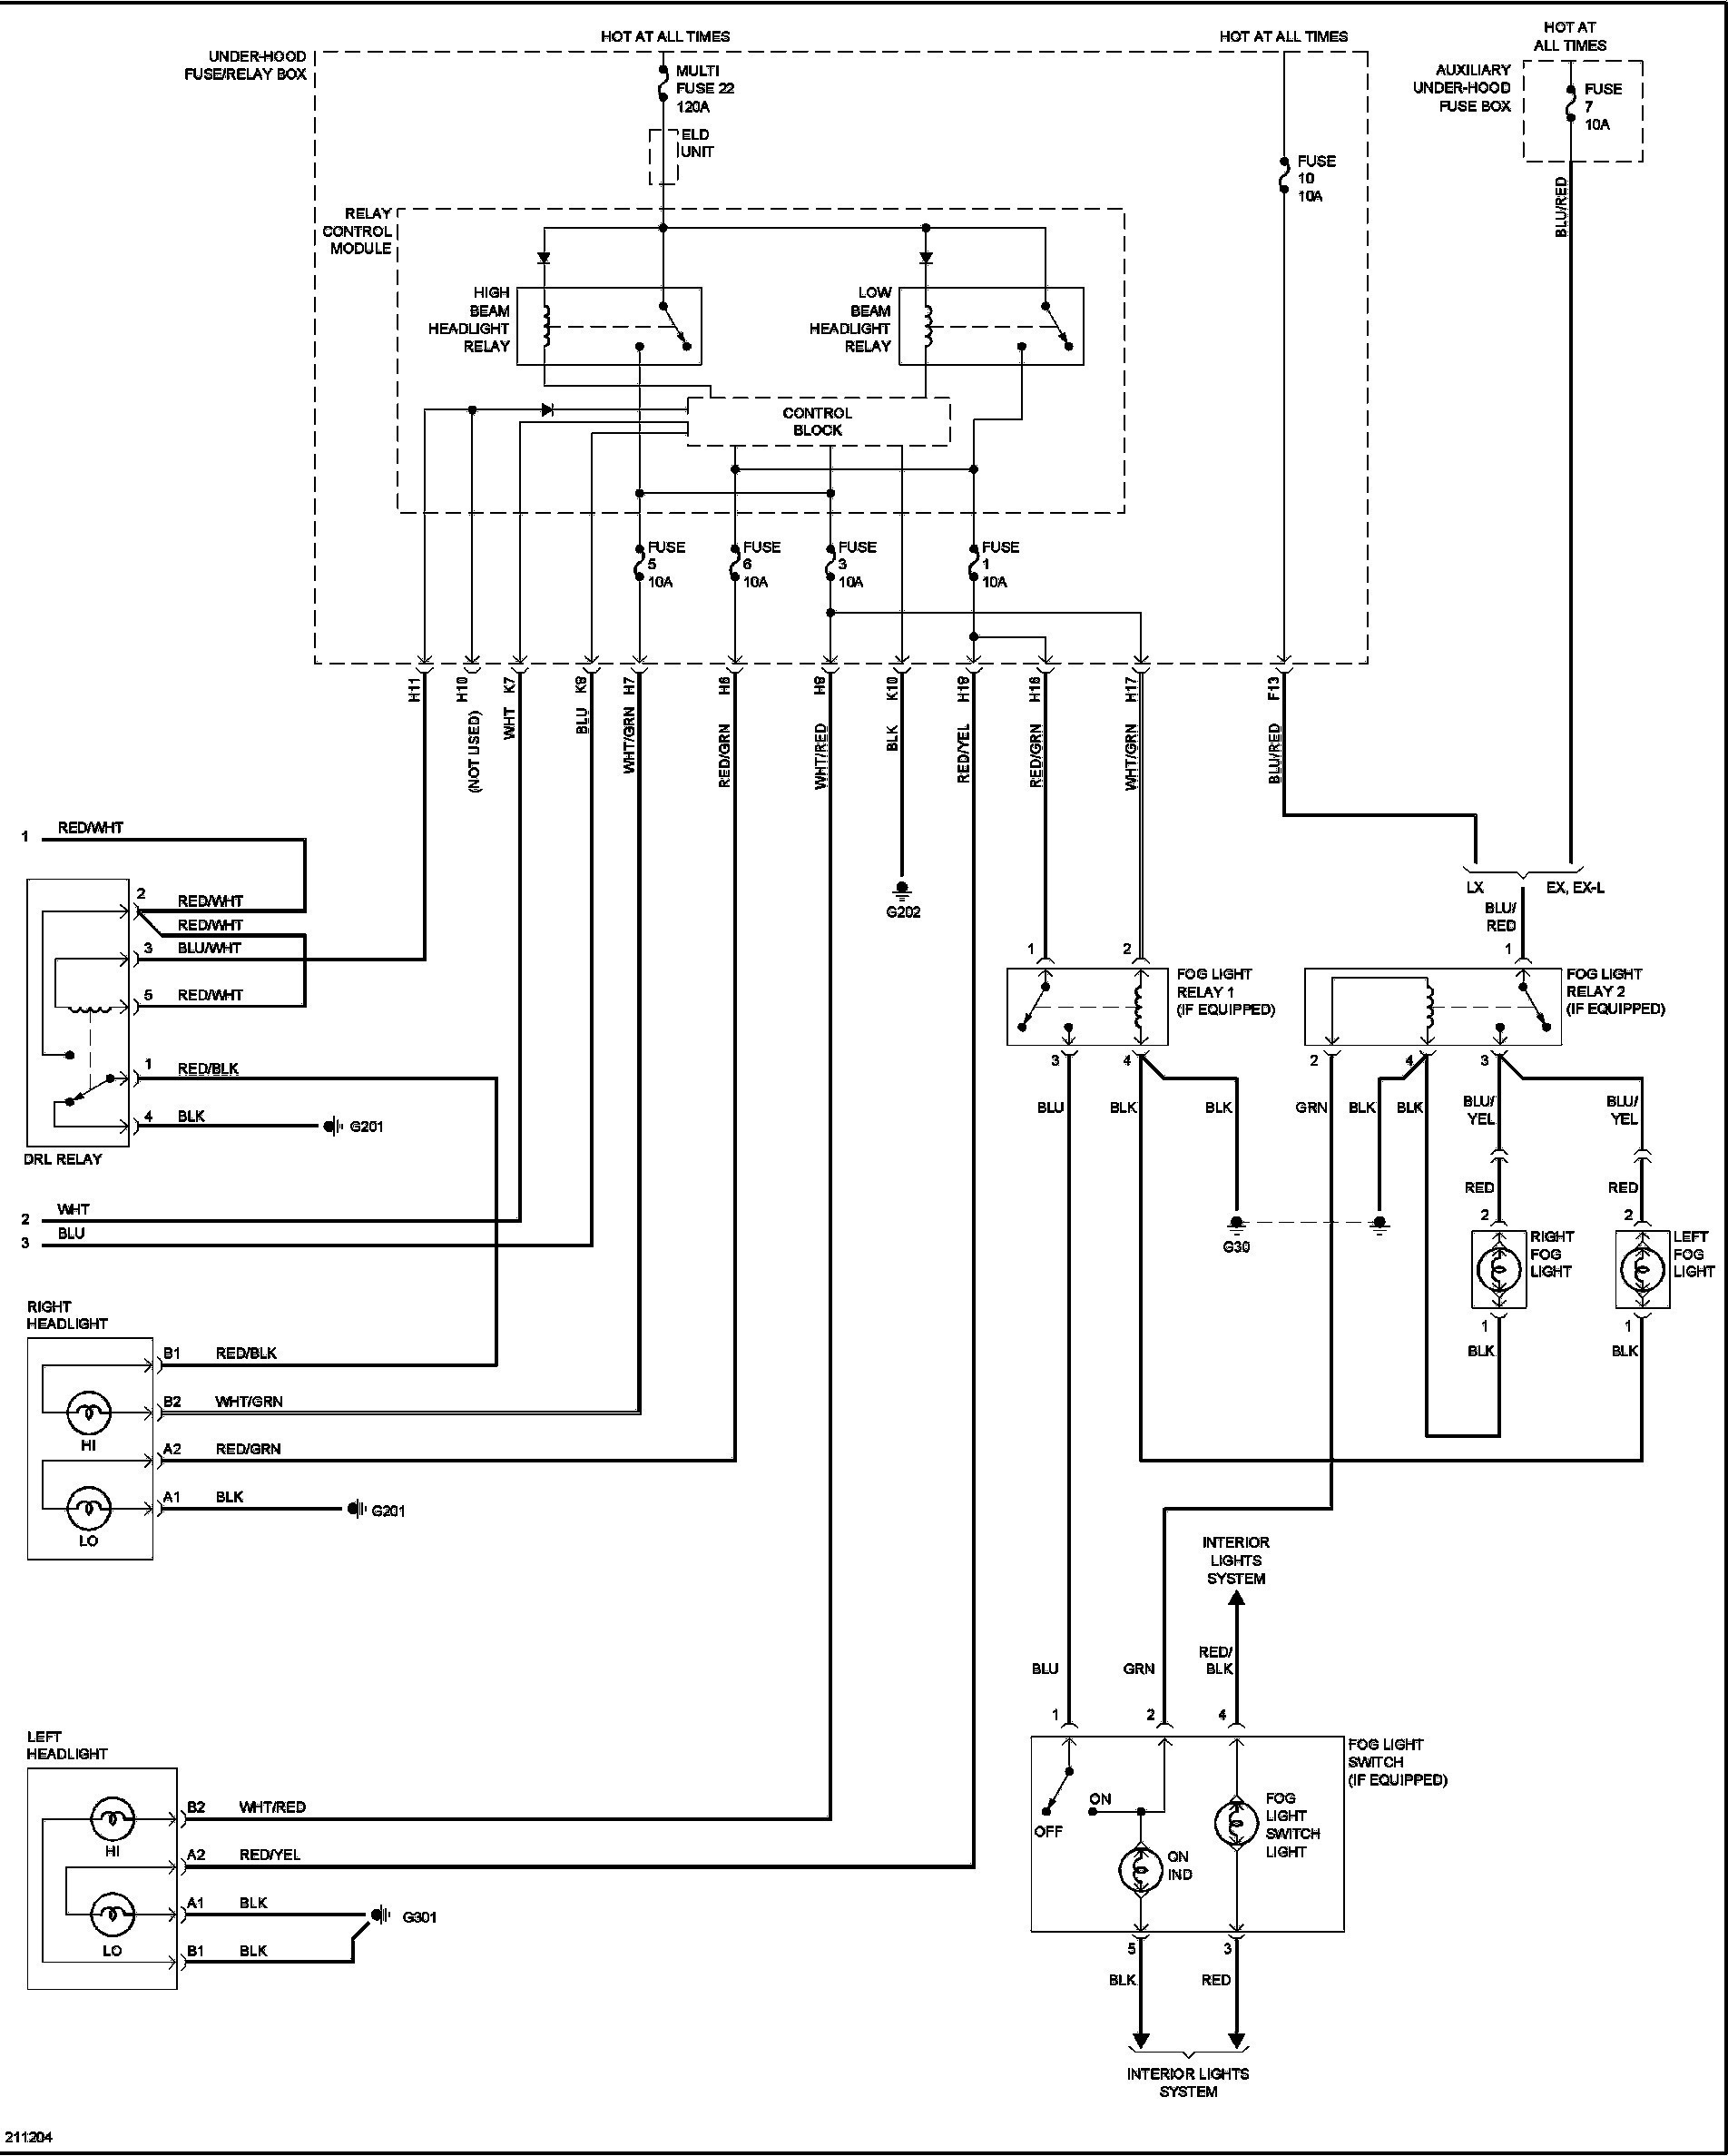 99 honda civic engine diagram 2000 civic engine diagram 1995 honda odyssey wiring diagrams wiring of 99 honda civic engine diagram